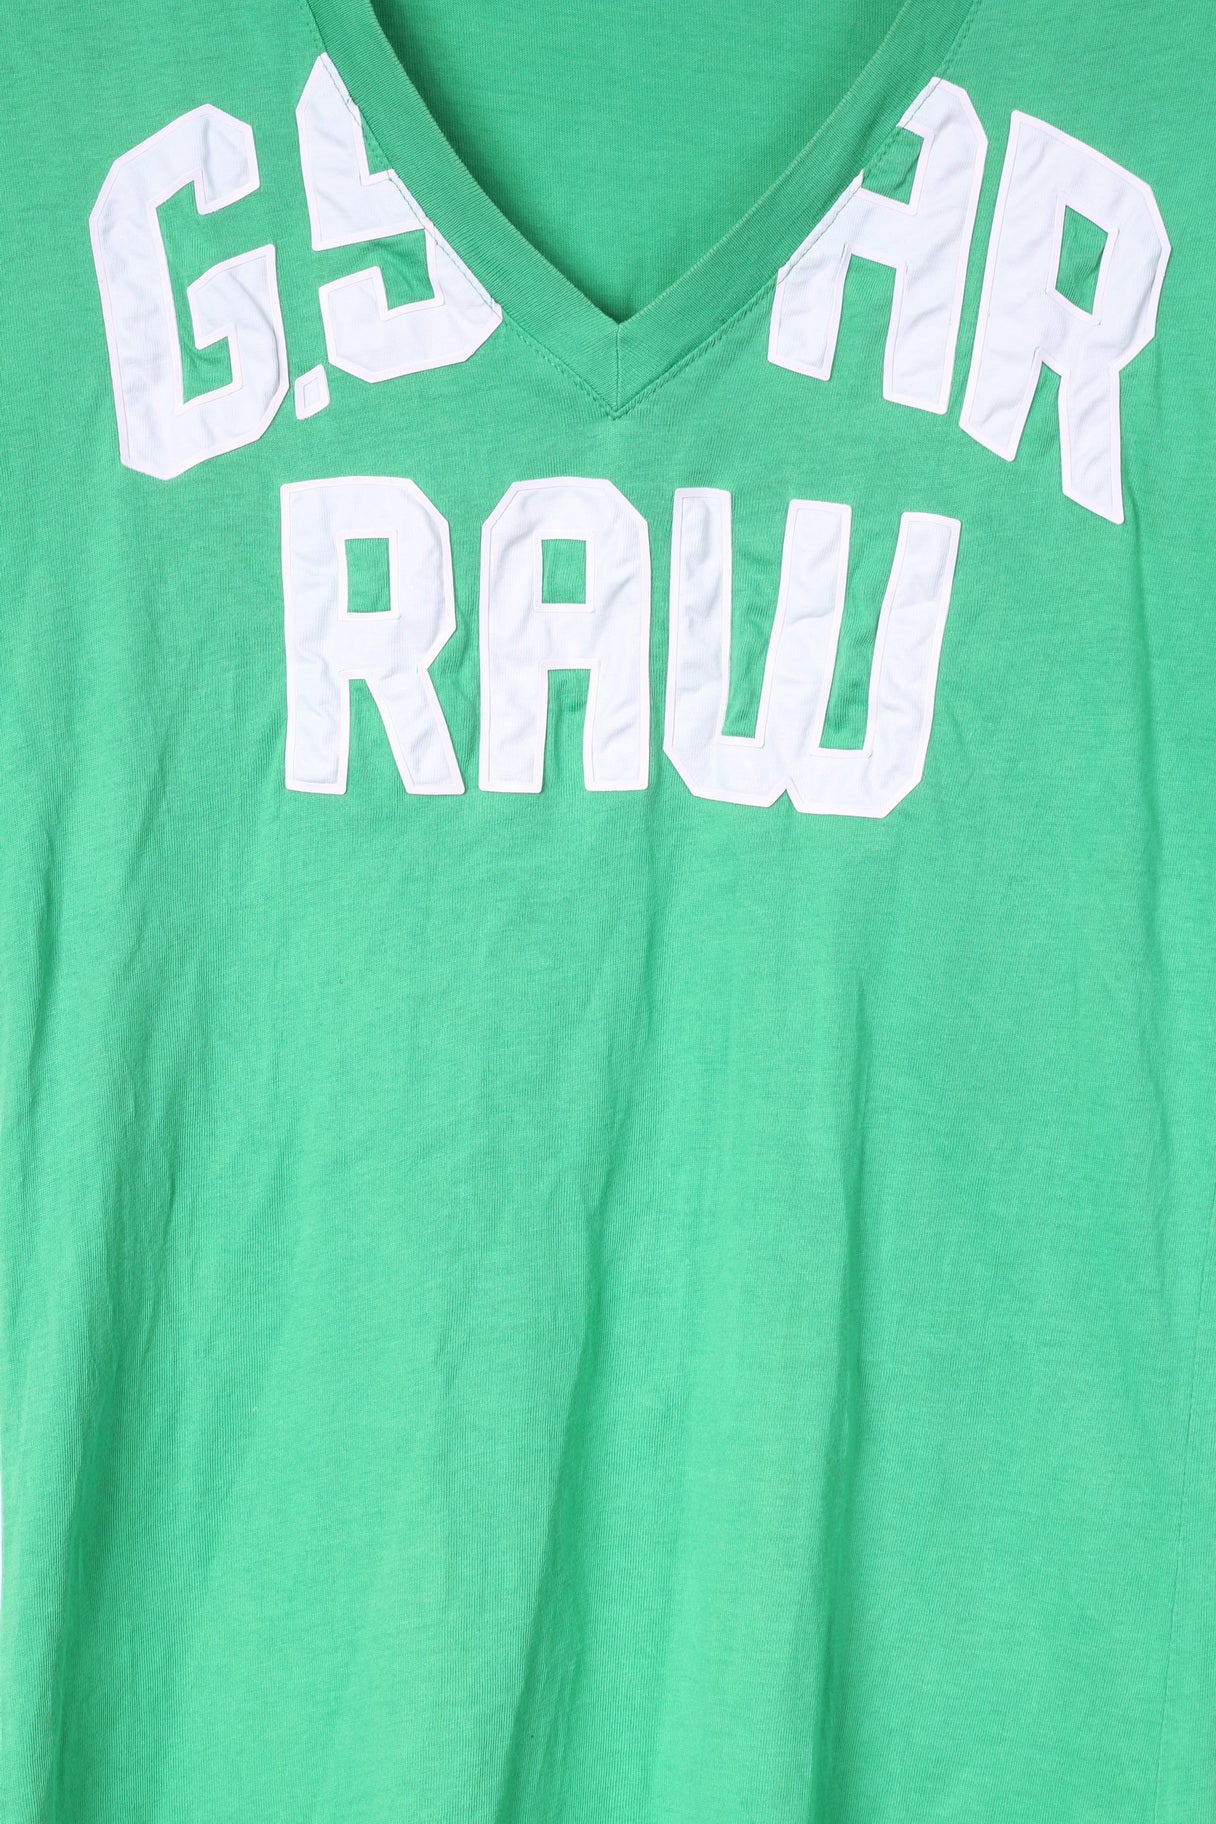 G-Star Raw Womens S T-Shirt Green V Neck Big Logo Cotton Top